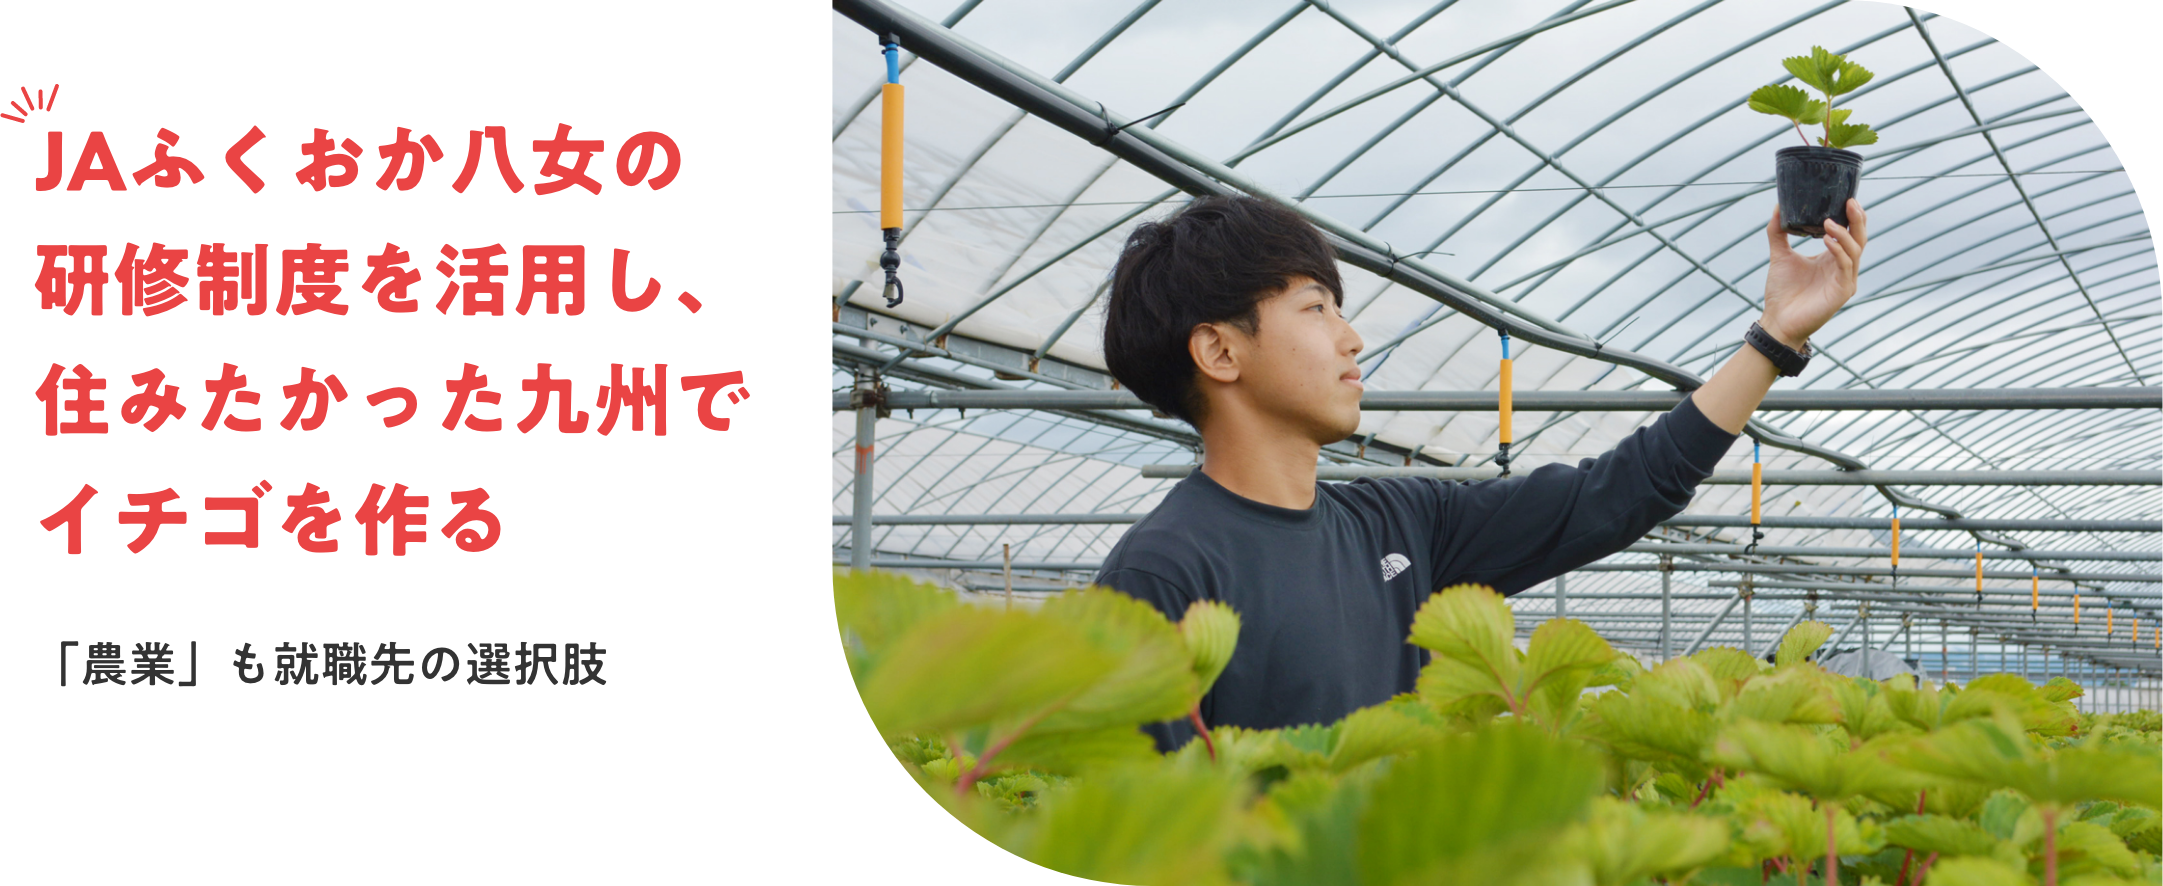 JAふくおか八女の研修制度を活用し、住みたかった九州でイチゴを作る　「農業」も就職先の選択肢